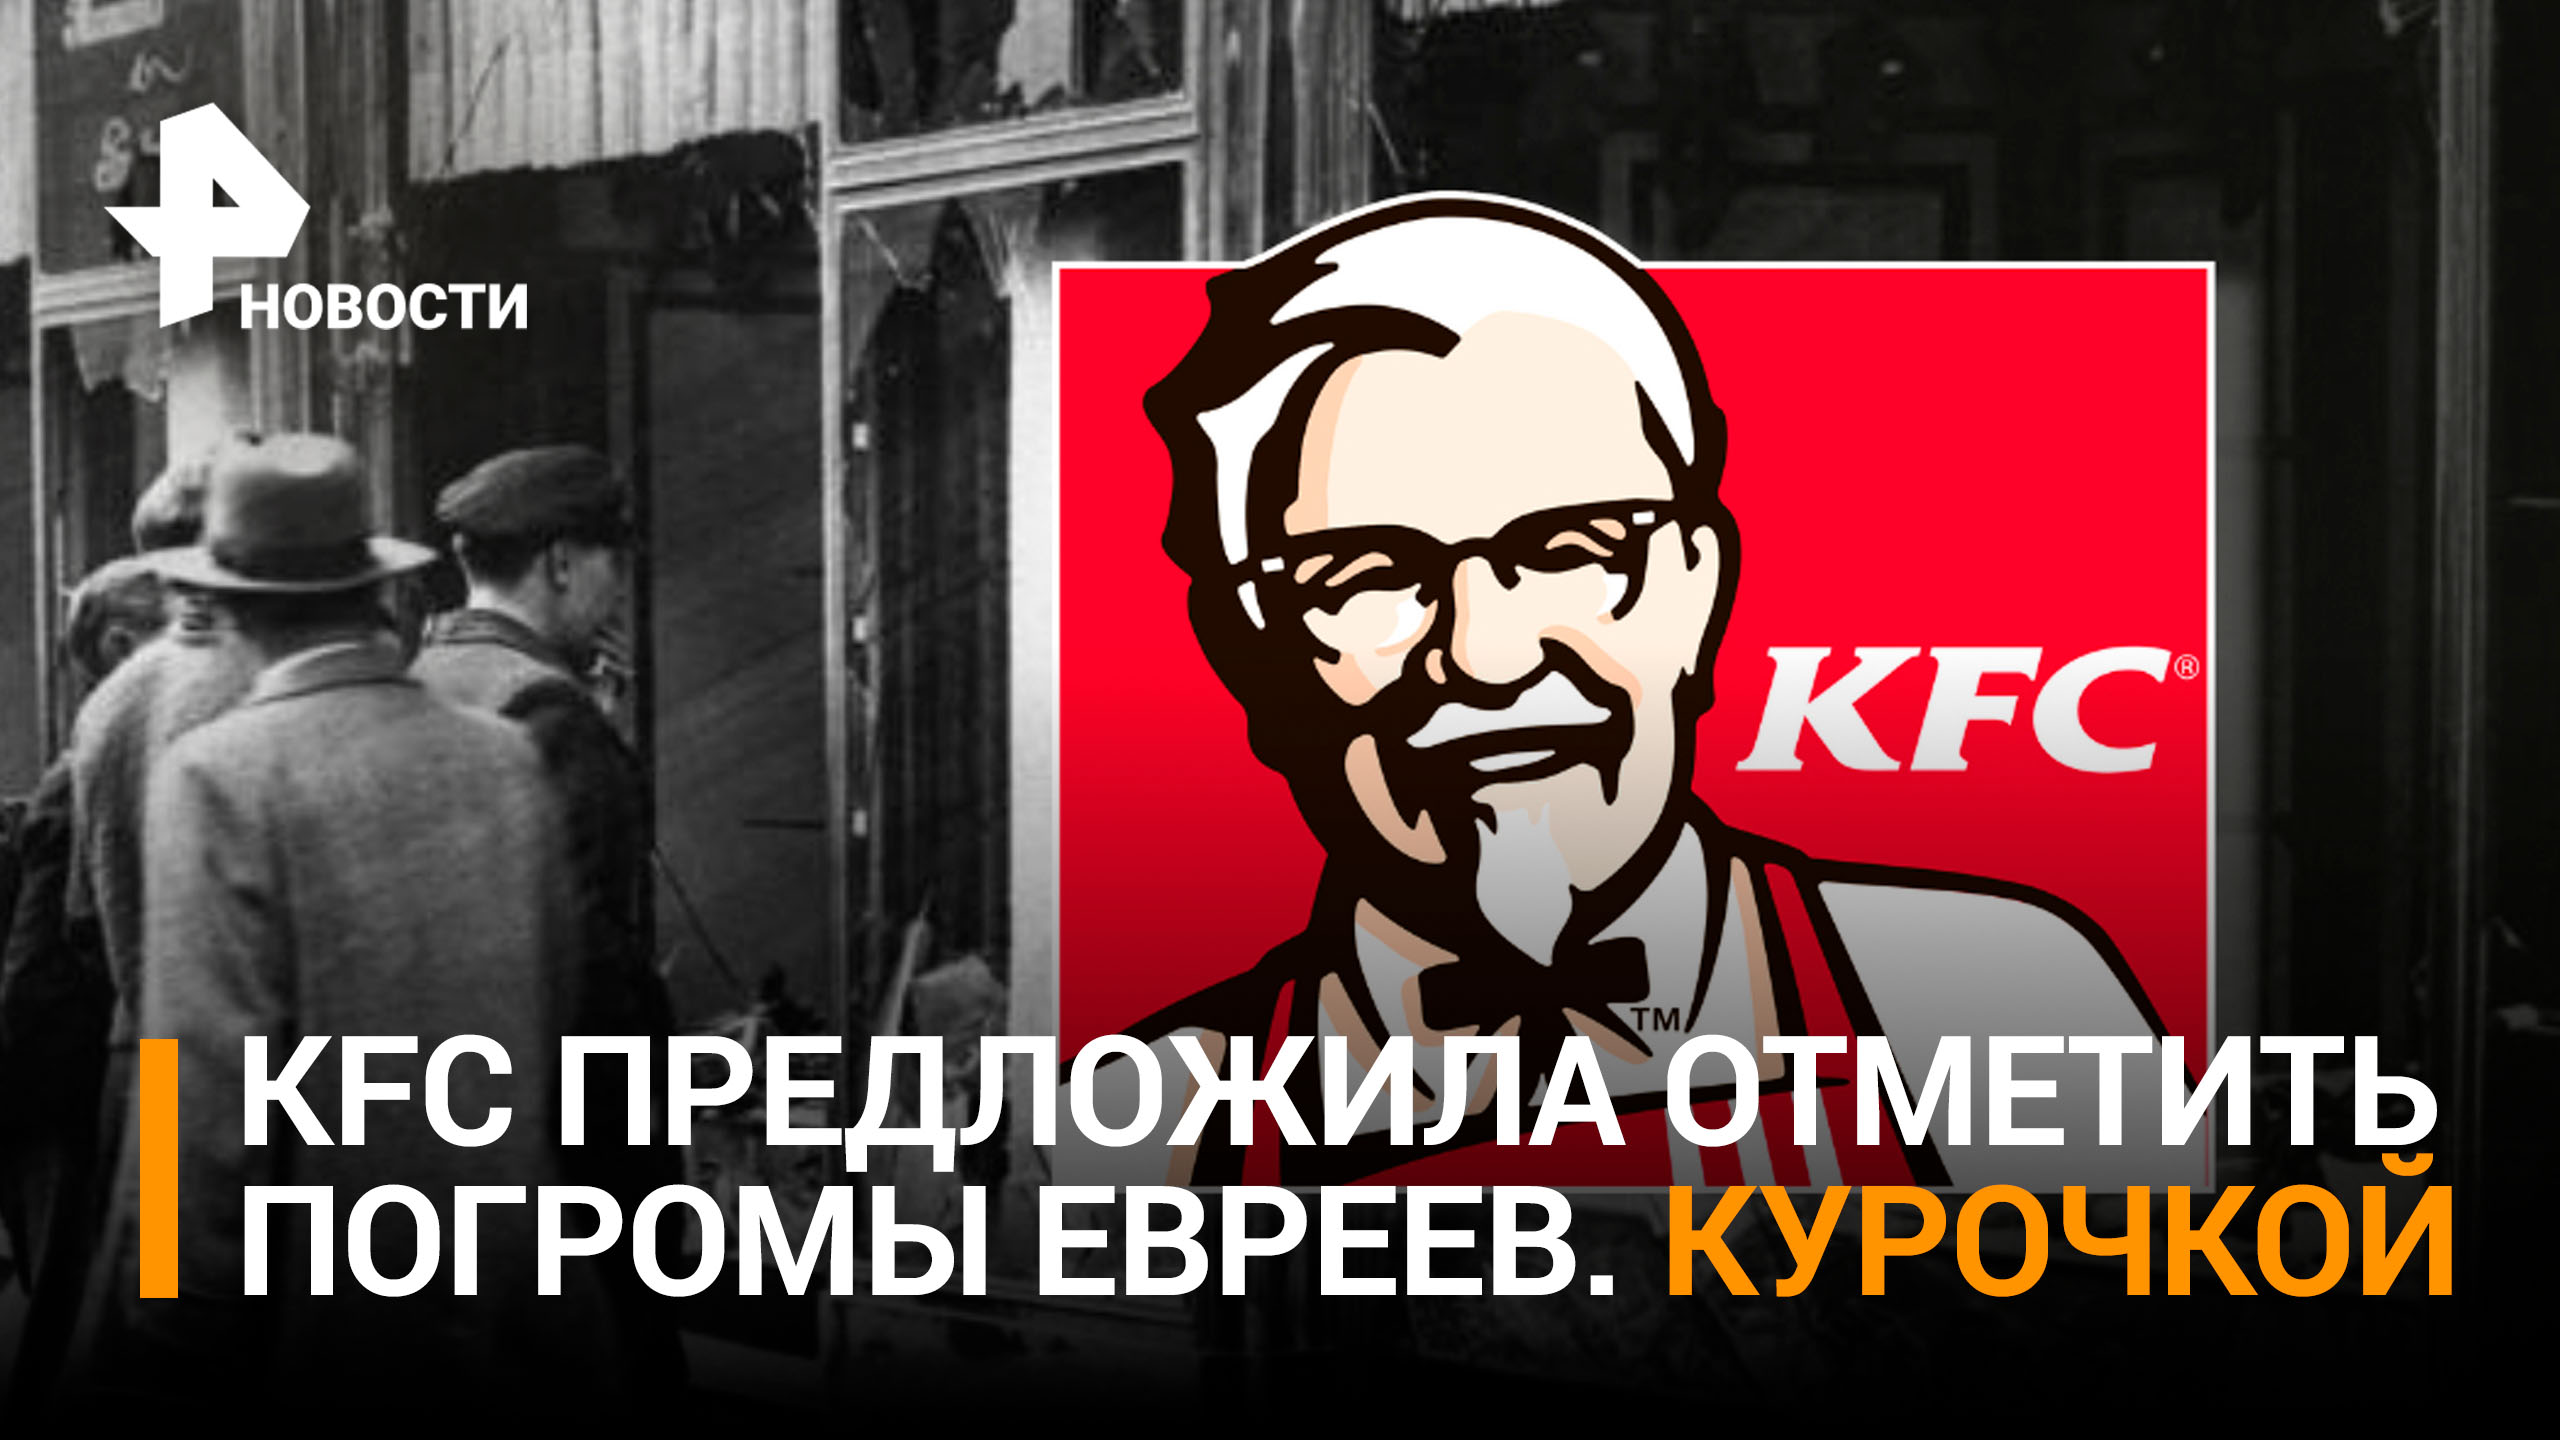 В KFC призвали порадовать себя вкусным фаст-фудом в день погромов евреев в Германии / РЕН Новости